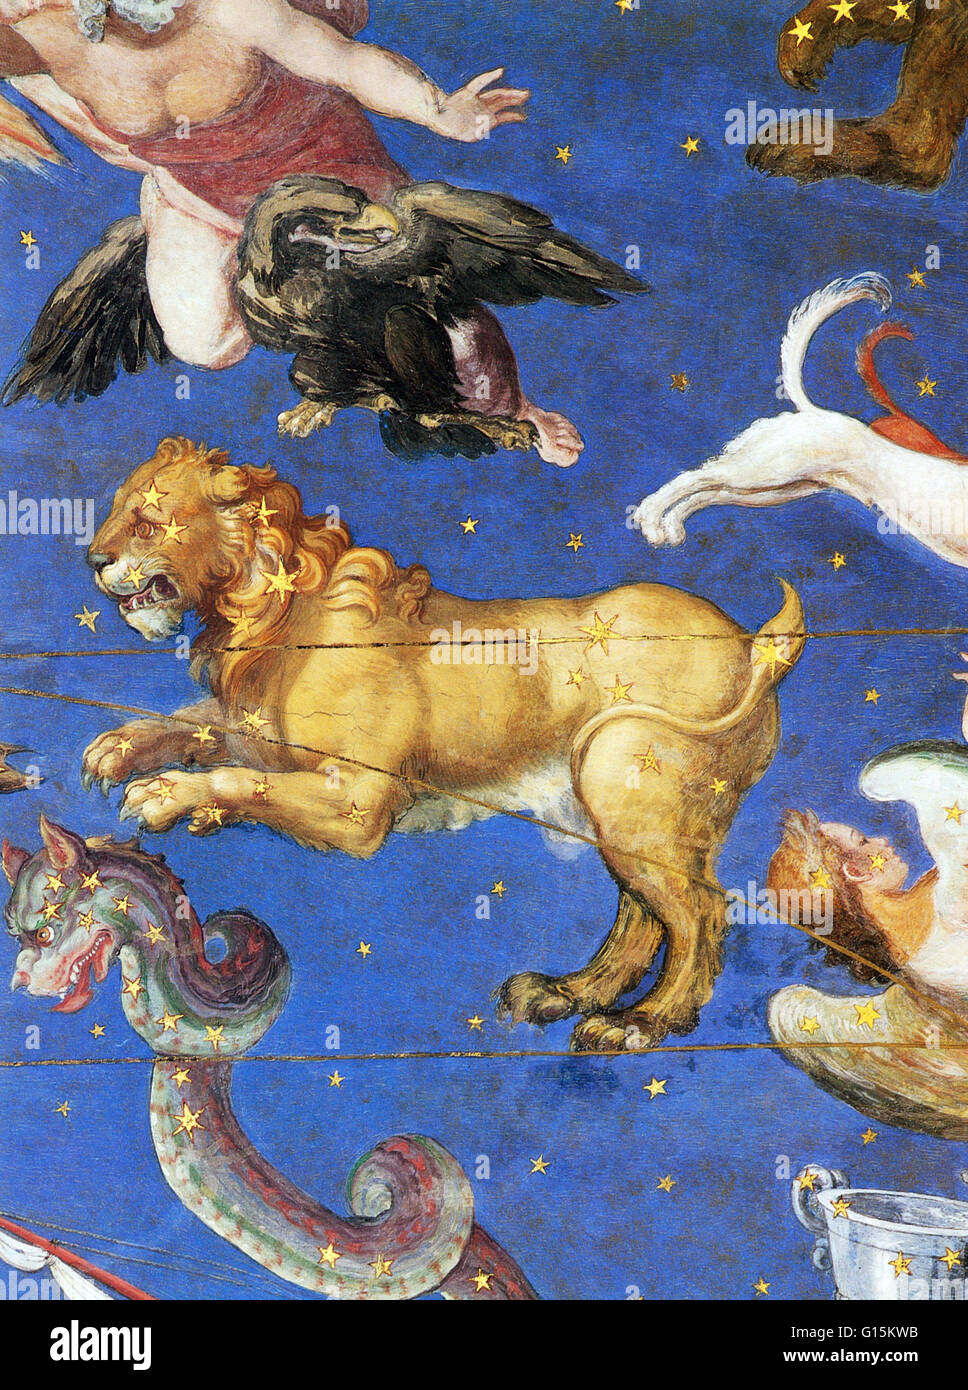 Constellation Leo sur le plafond de la Villa Farnèse, Montefiascone, Italie a peint en 1575. Le lion est l'une des constellations du zodiaque, situé entre le cancer de l'ouest et la Vierge à l'Est. Son nom est latin pour lion. L'une des 48 constellations descr Banque D'Images